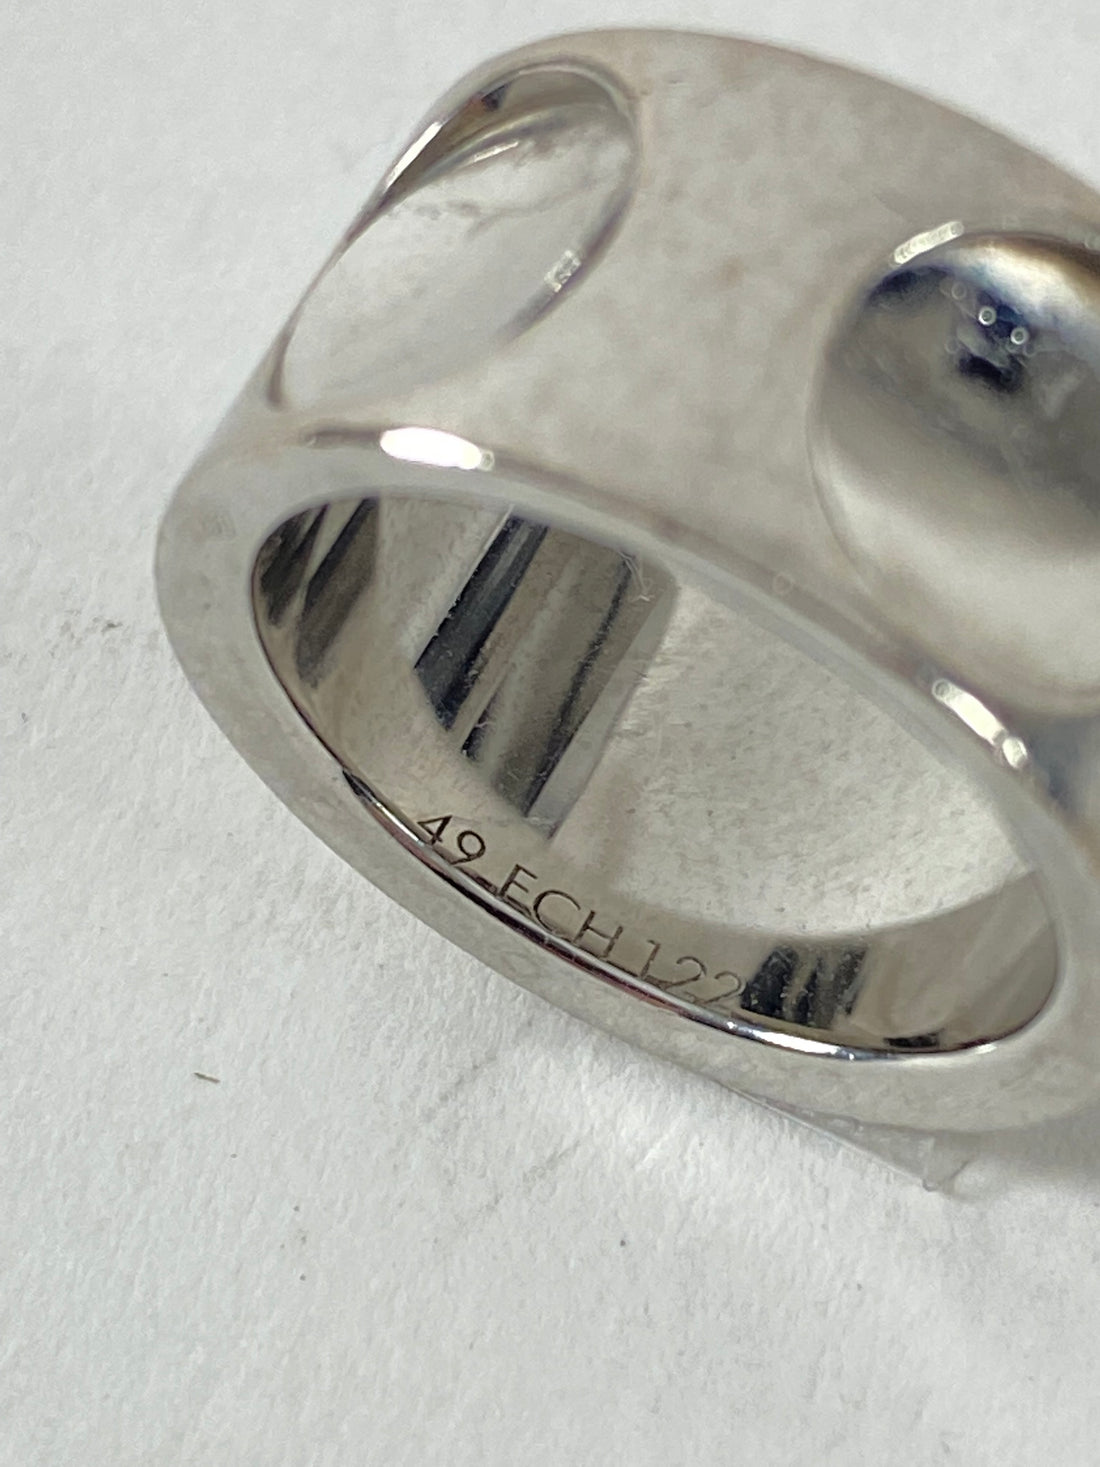 Louis Vuitton Large Empreinte Ring in 18k White Gold  myGemma  CH  Item  114919